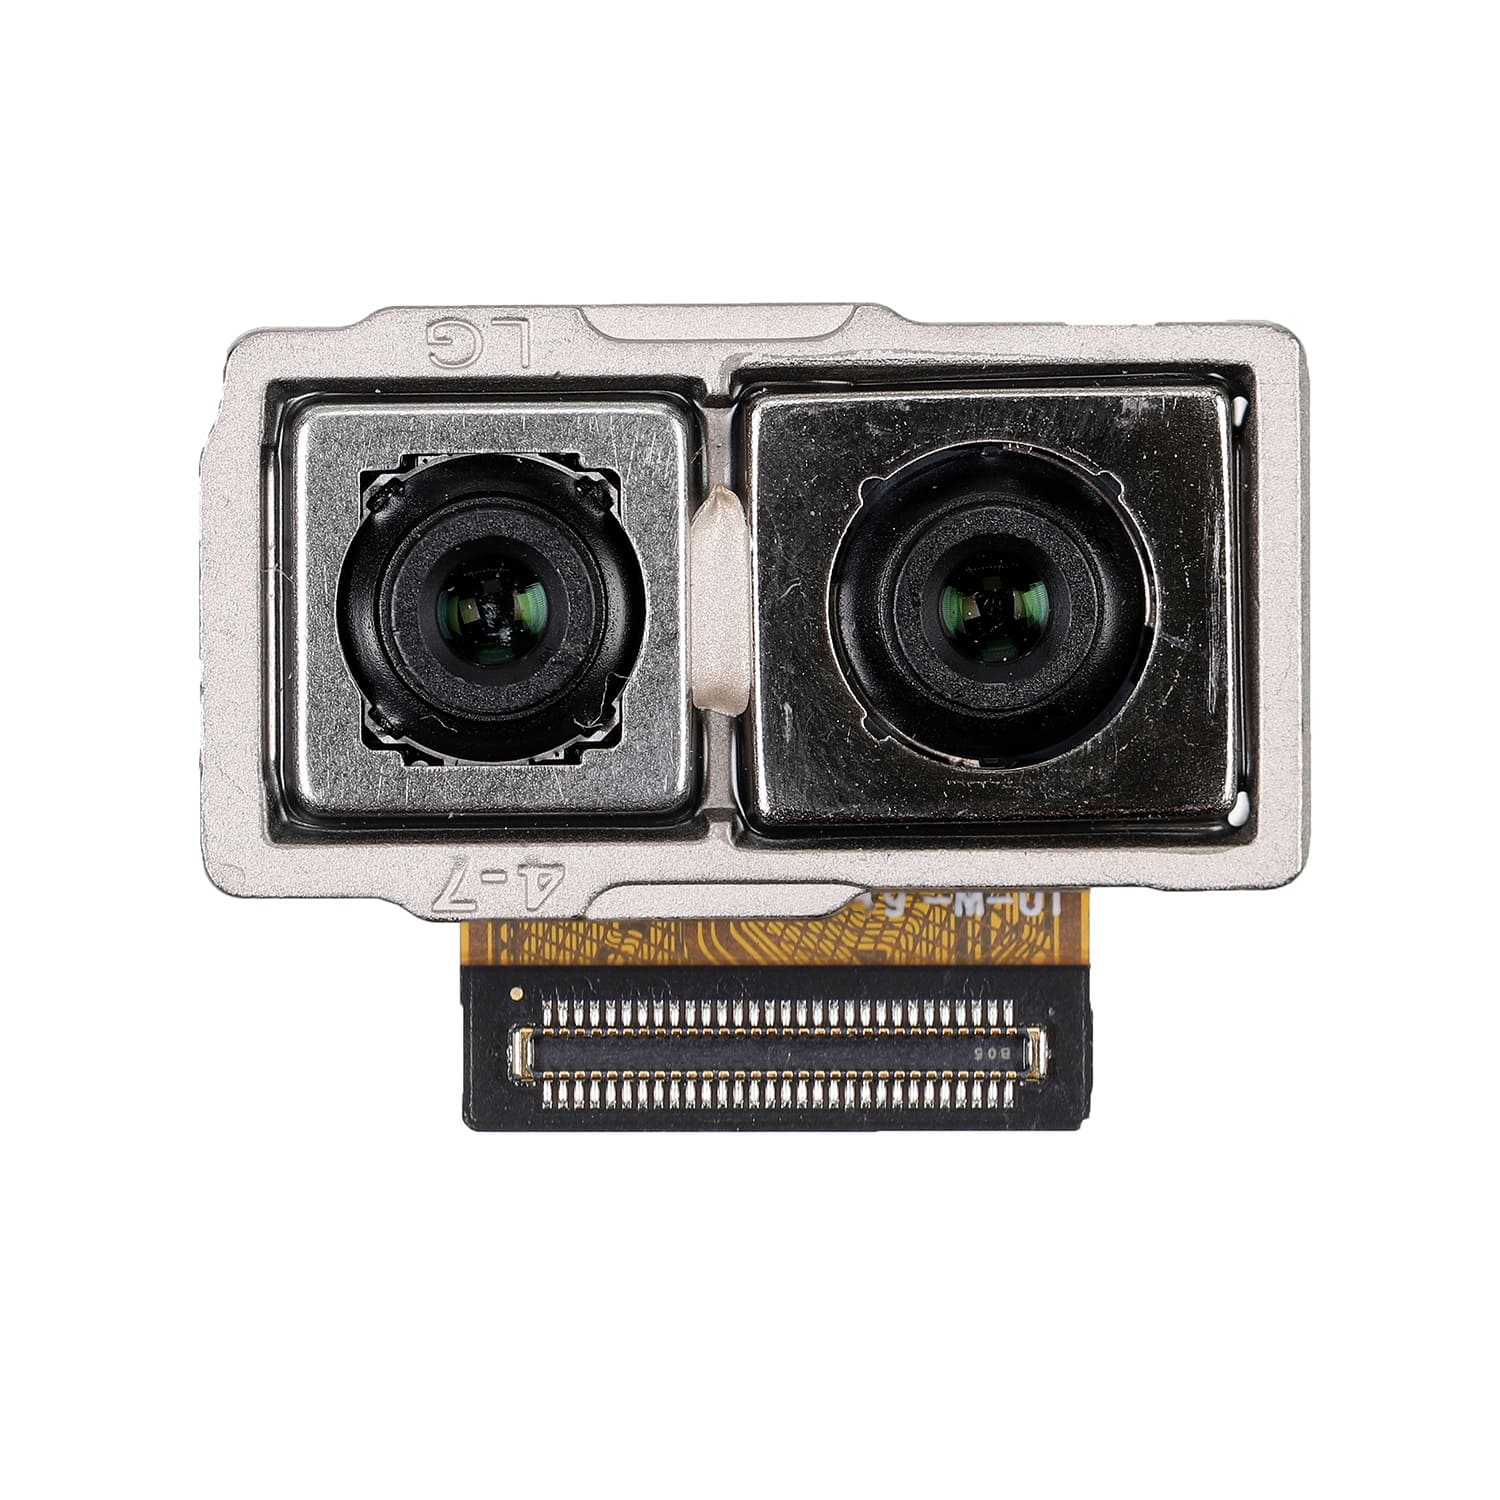 Huawei Mate 10 (ALP-L29)/Mate 10 Pro (BLA-L29) Back Camera Module